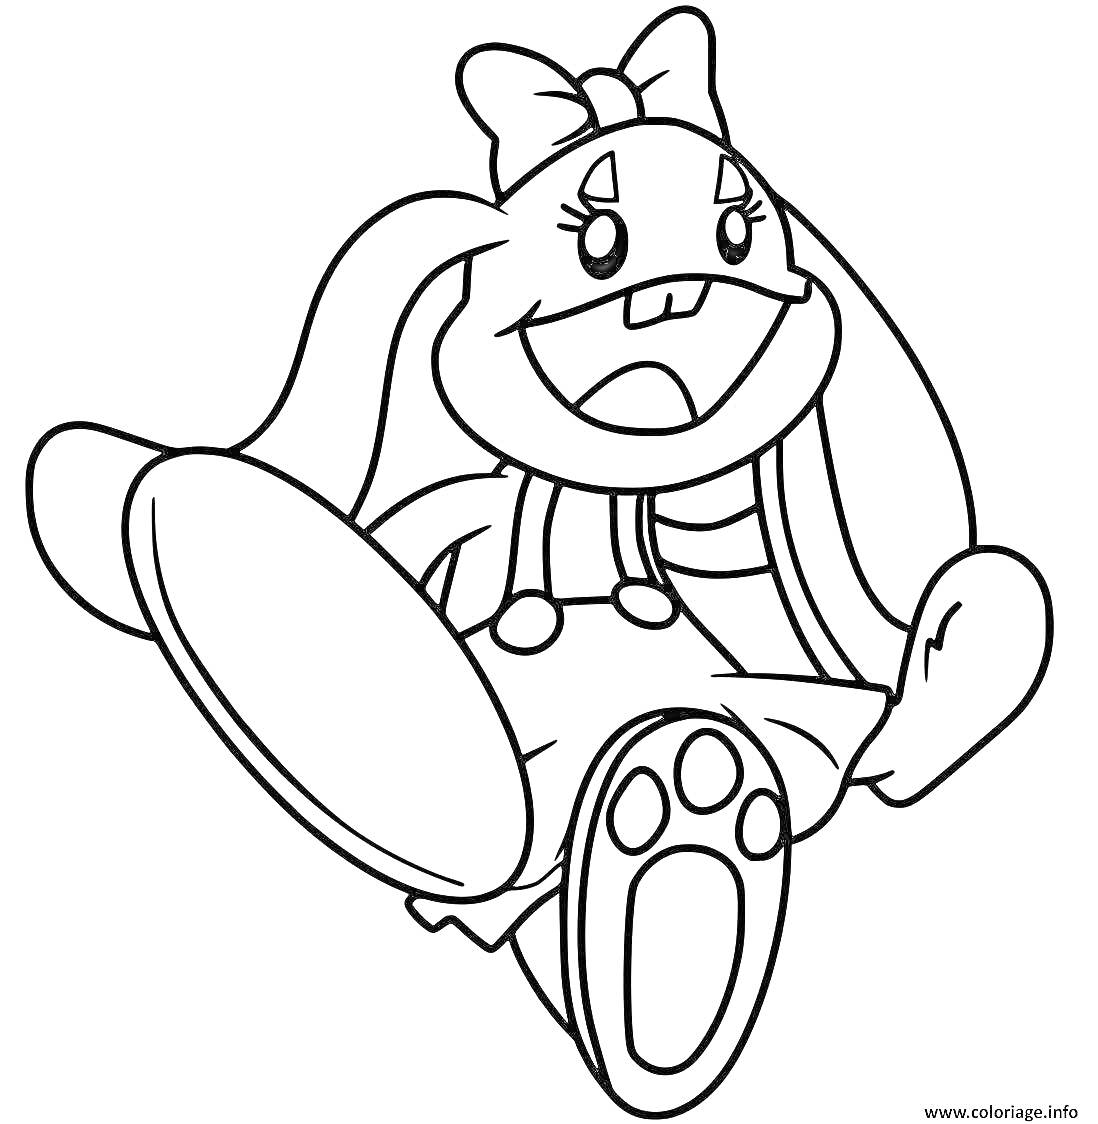 Раскраска Кролик Бонзо с бантиком на голове в комбинезоне, вытянувший большую лапу вперед